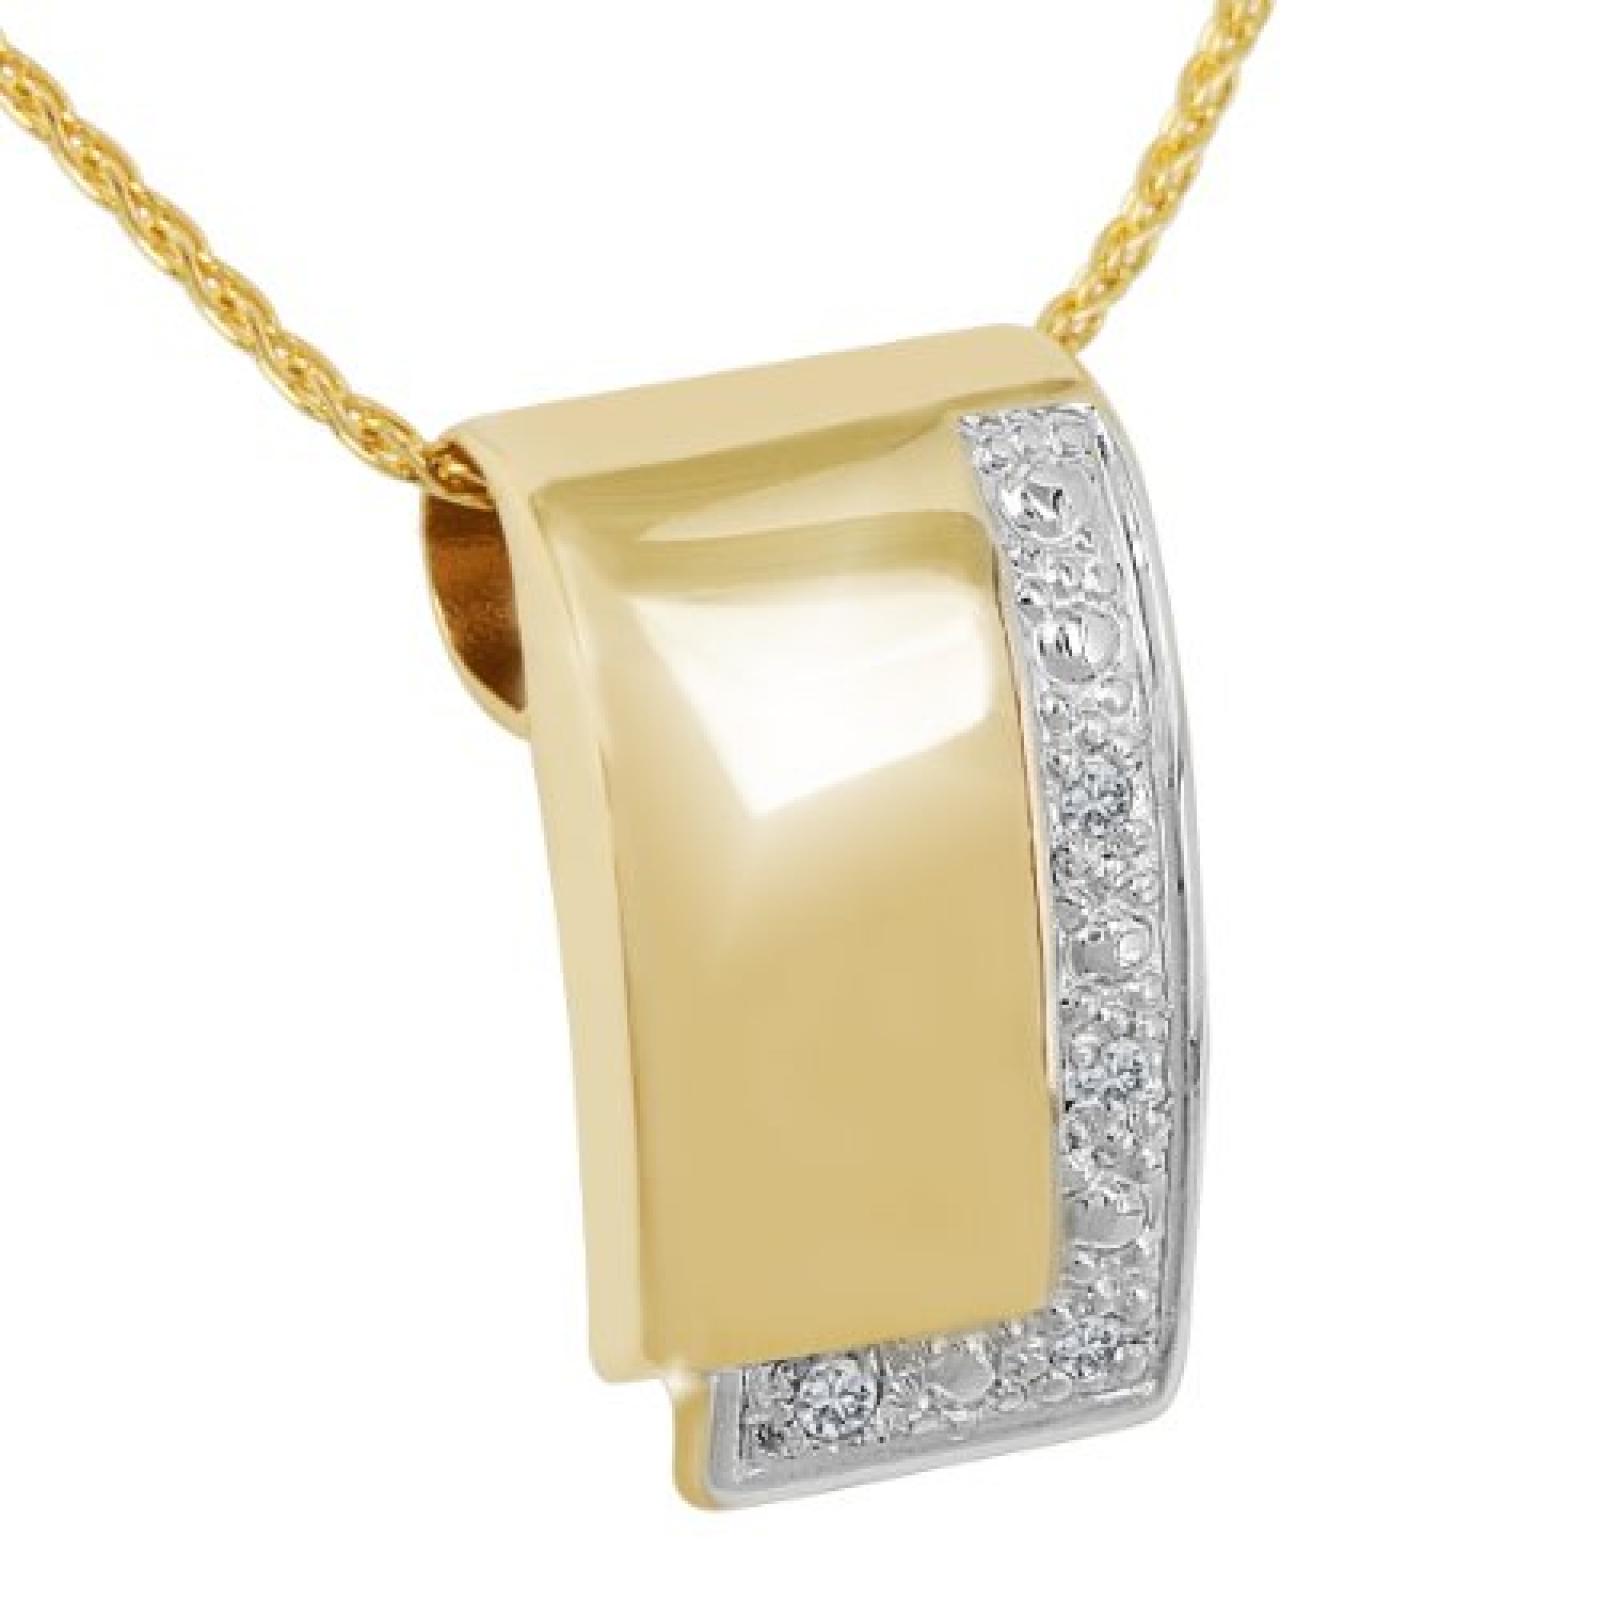 Bella Donna Damen-Halskette 585 Gelbgold teilrhodiniert 4 Diamanten 0,02ct. Weiss Pique1 43 cm 108816 